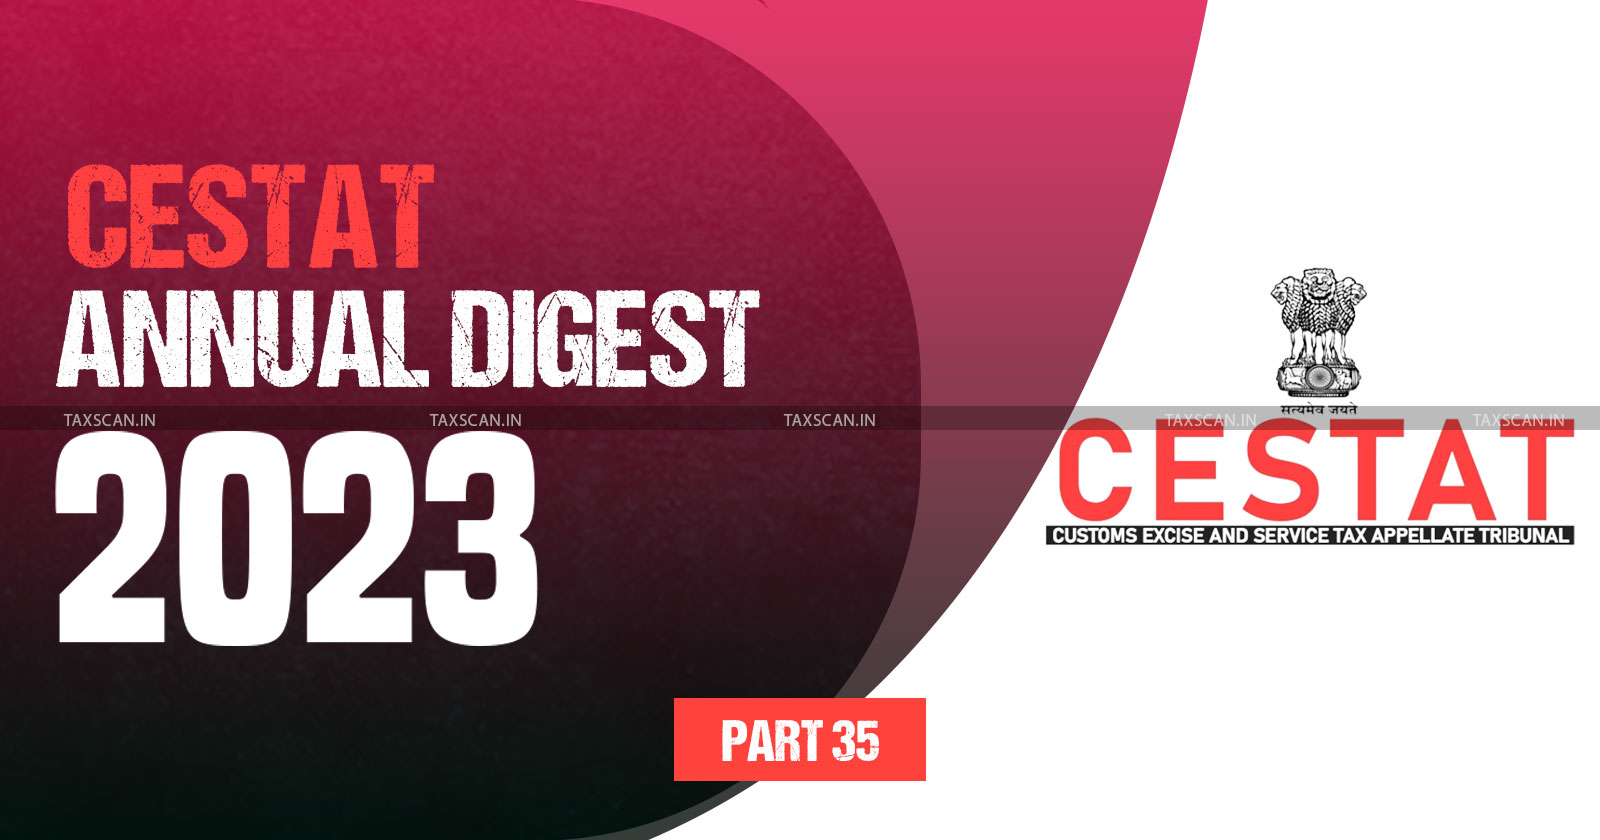 Annual Digest 2023 - CESTAT Annual Digest 2023 - cestat - part 35 -TAXSCAN